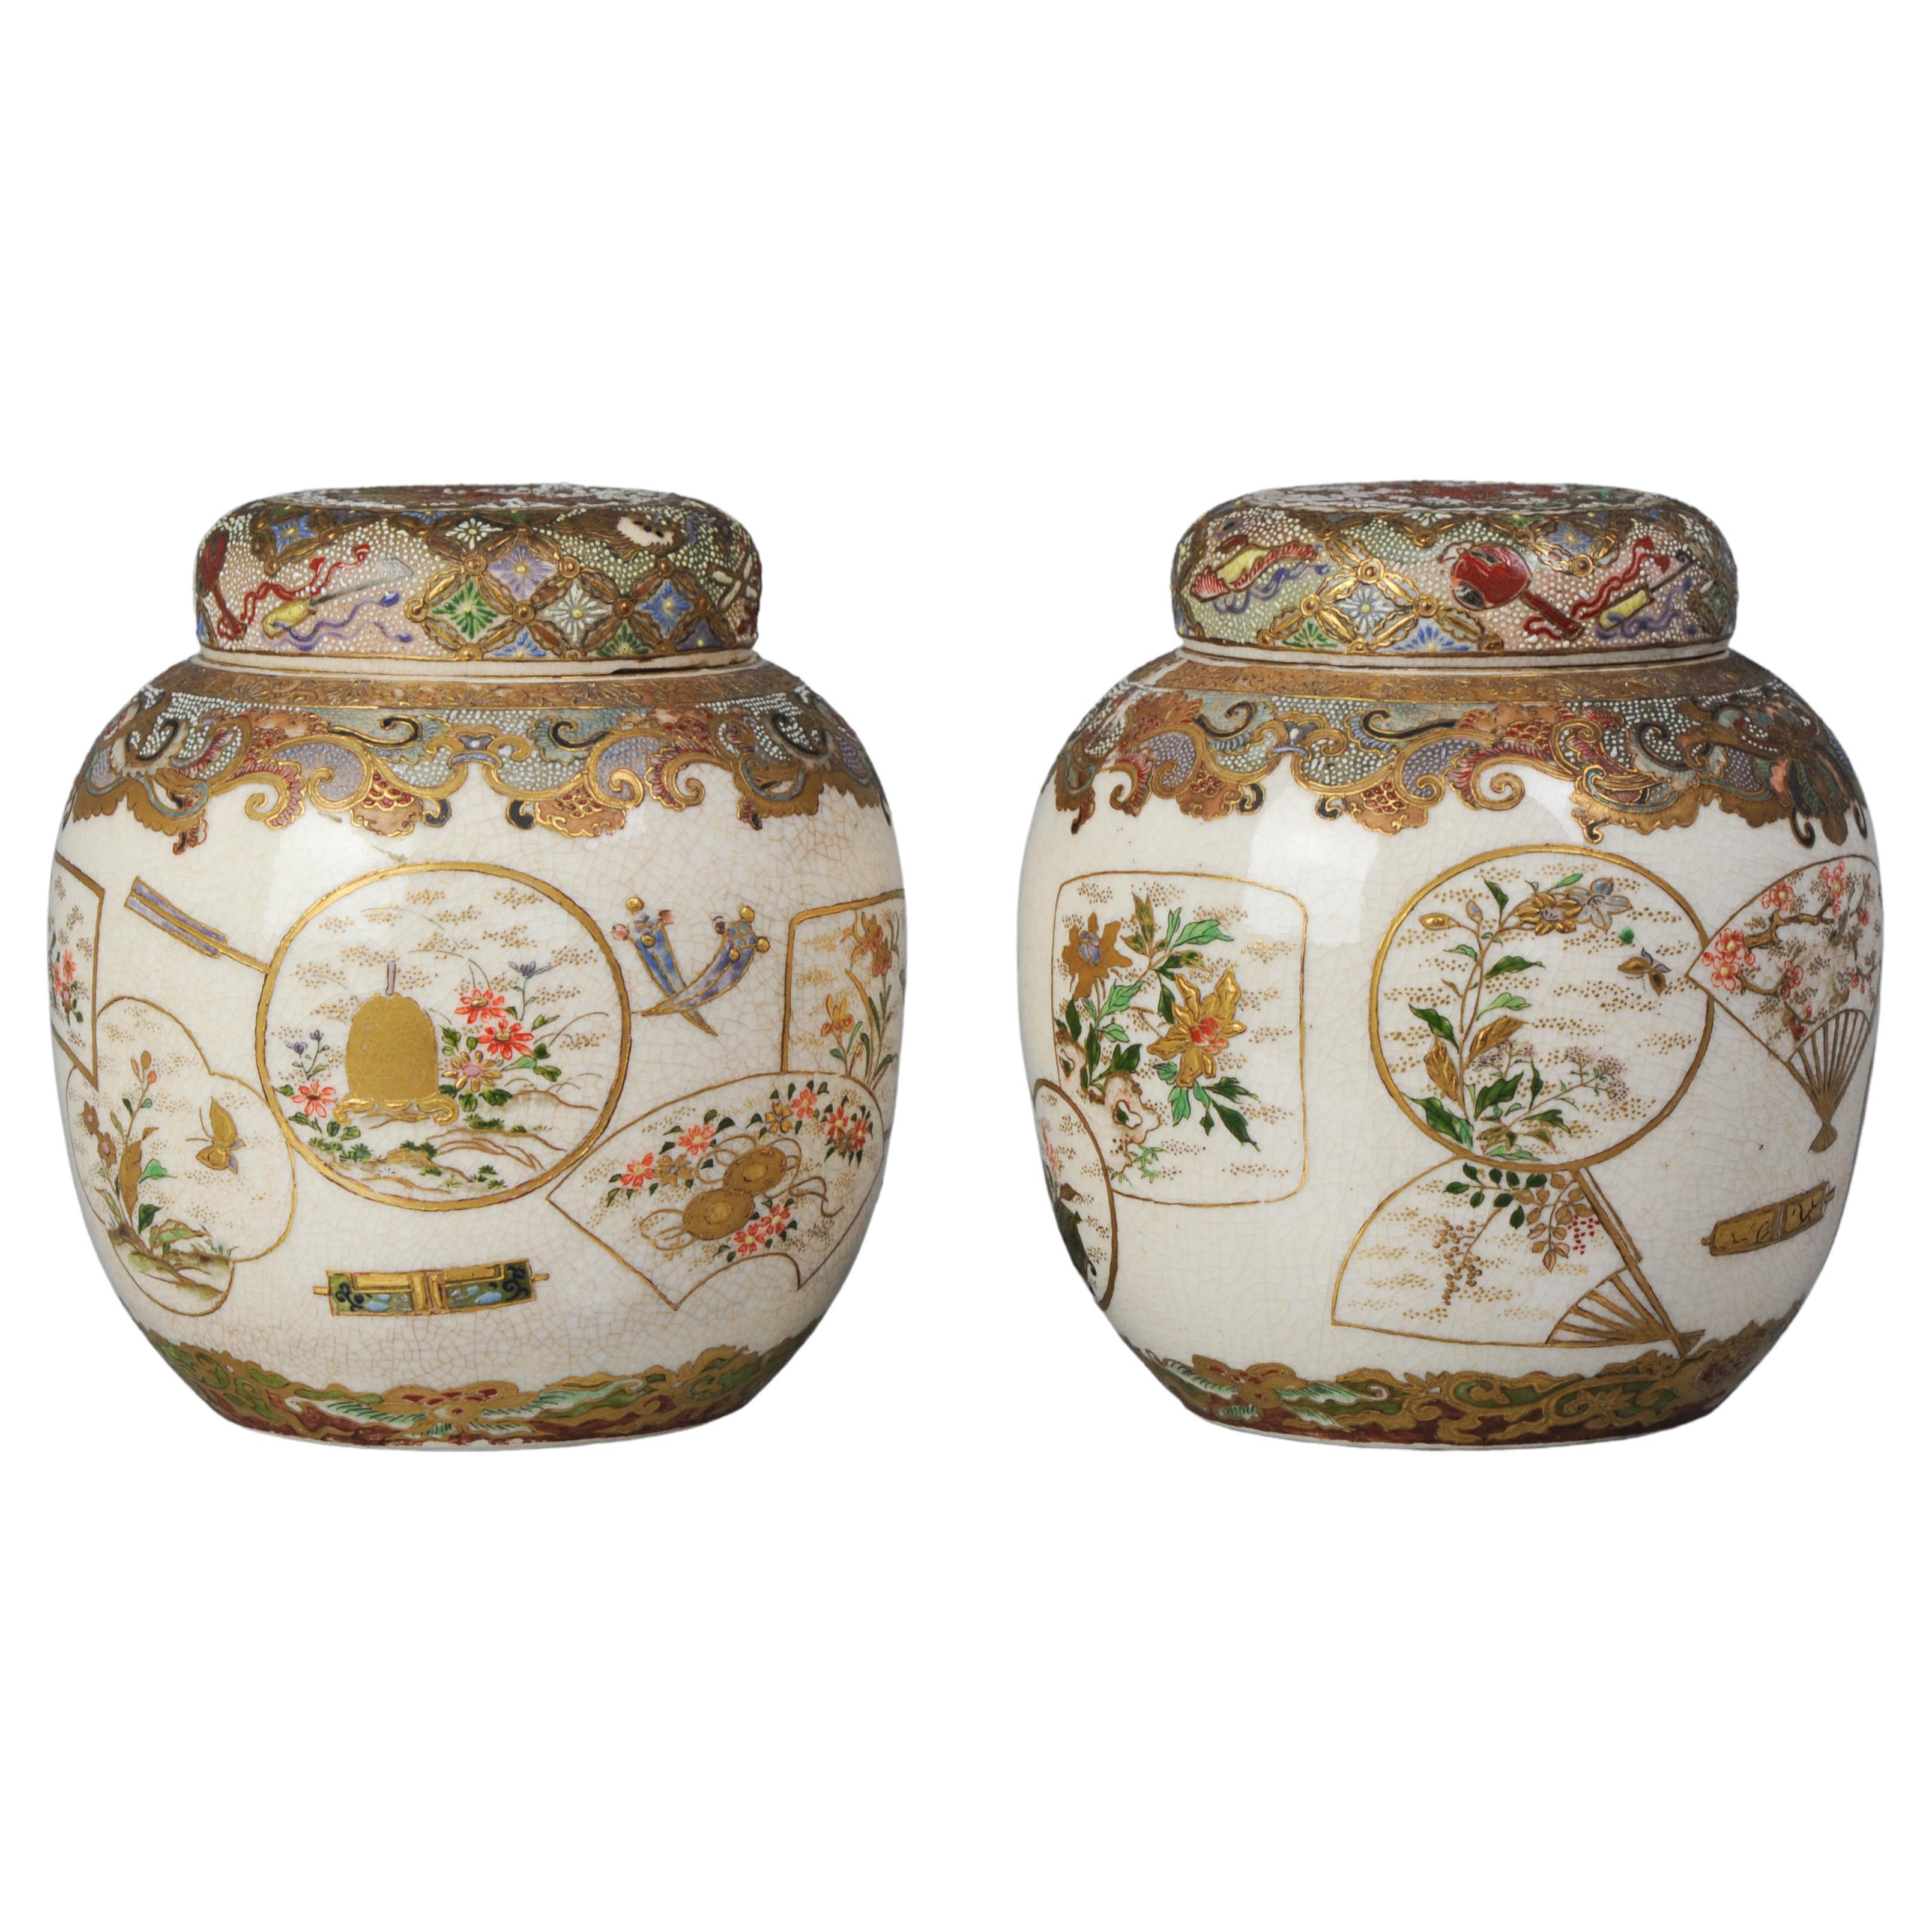 Paar antike japanische Satsuma-Vase aus dem 19. Jahrhundert (Meiji) mit unmarkiertem Sockel